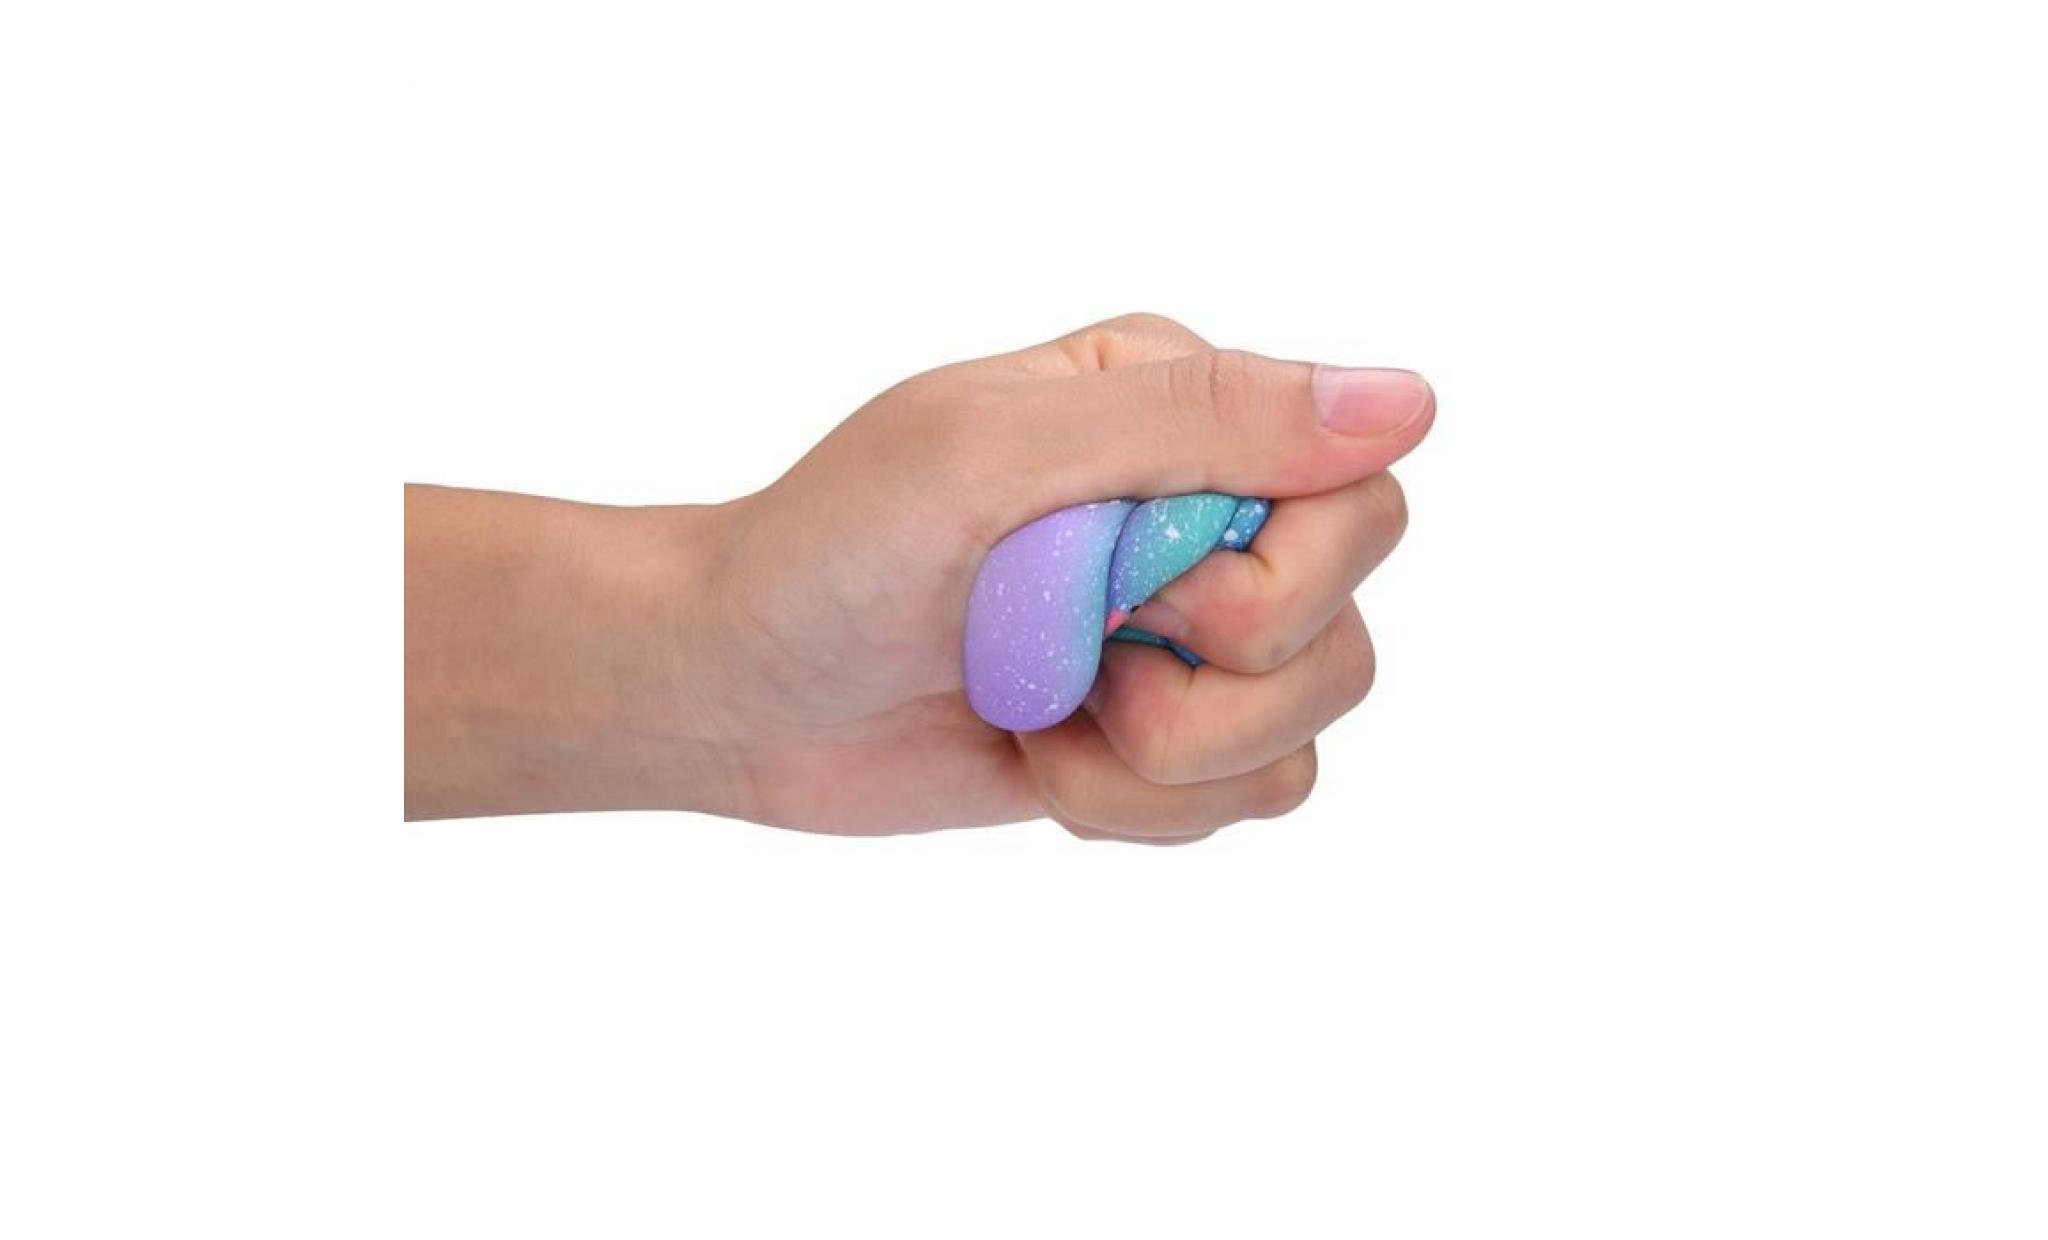 mosakog® galaxy poo odeur agréable squishies jouets squeeze lente hausse du stress toys releveur multicolore_5656 pas cher